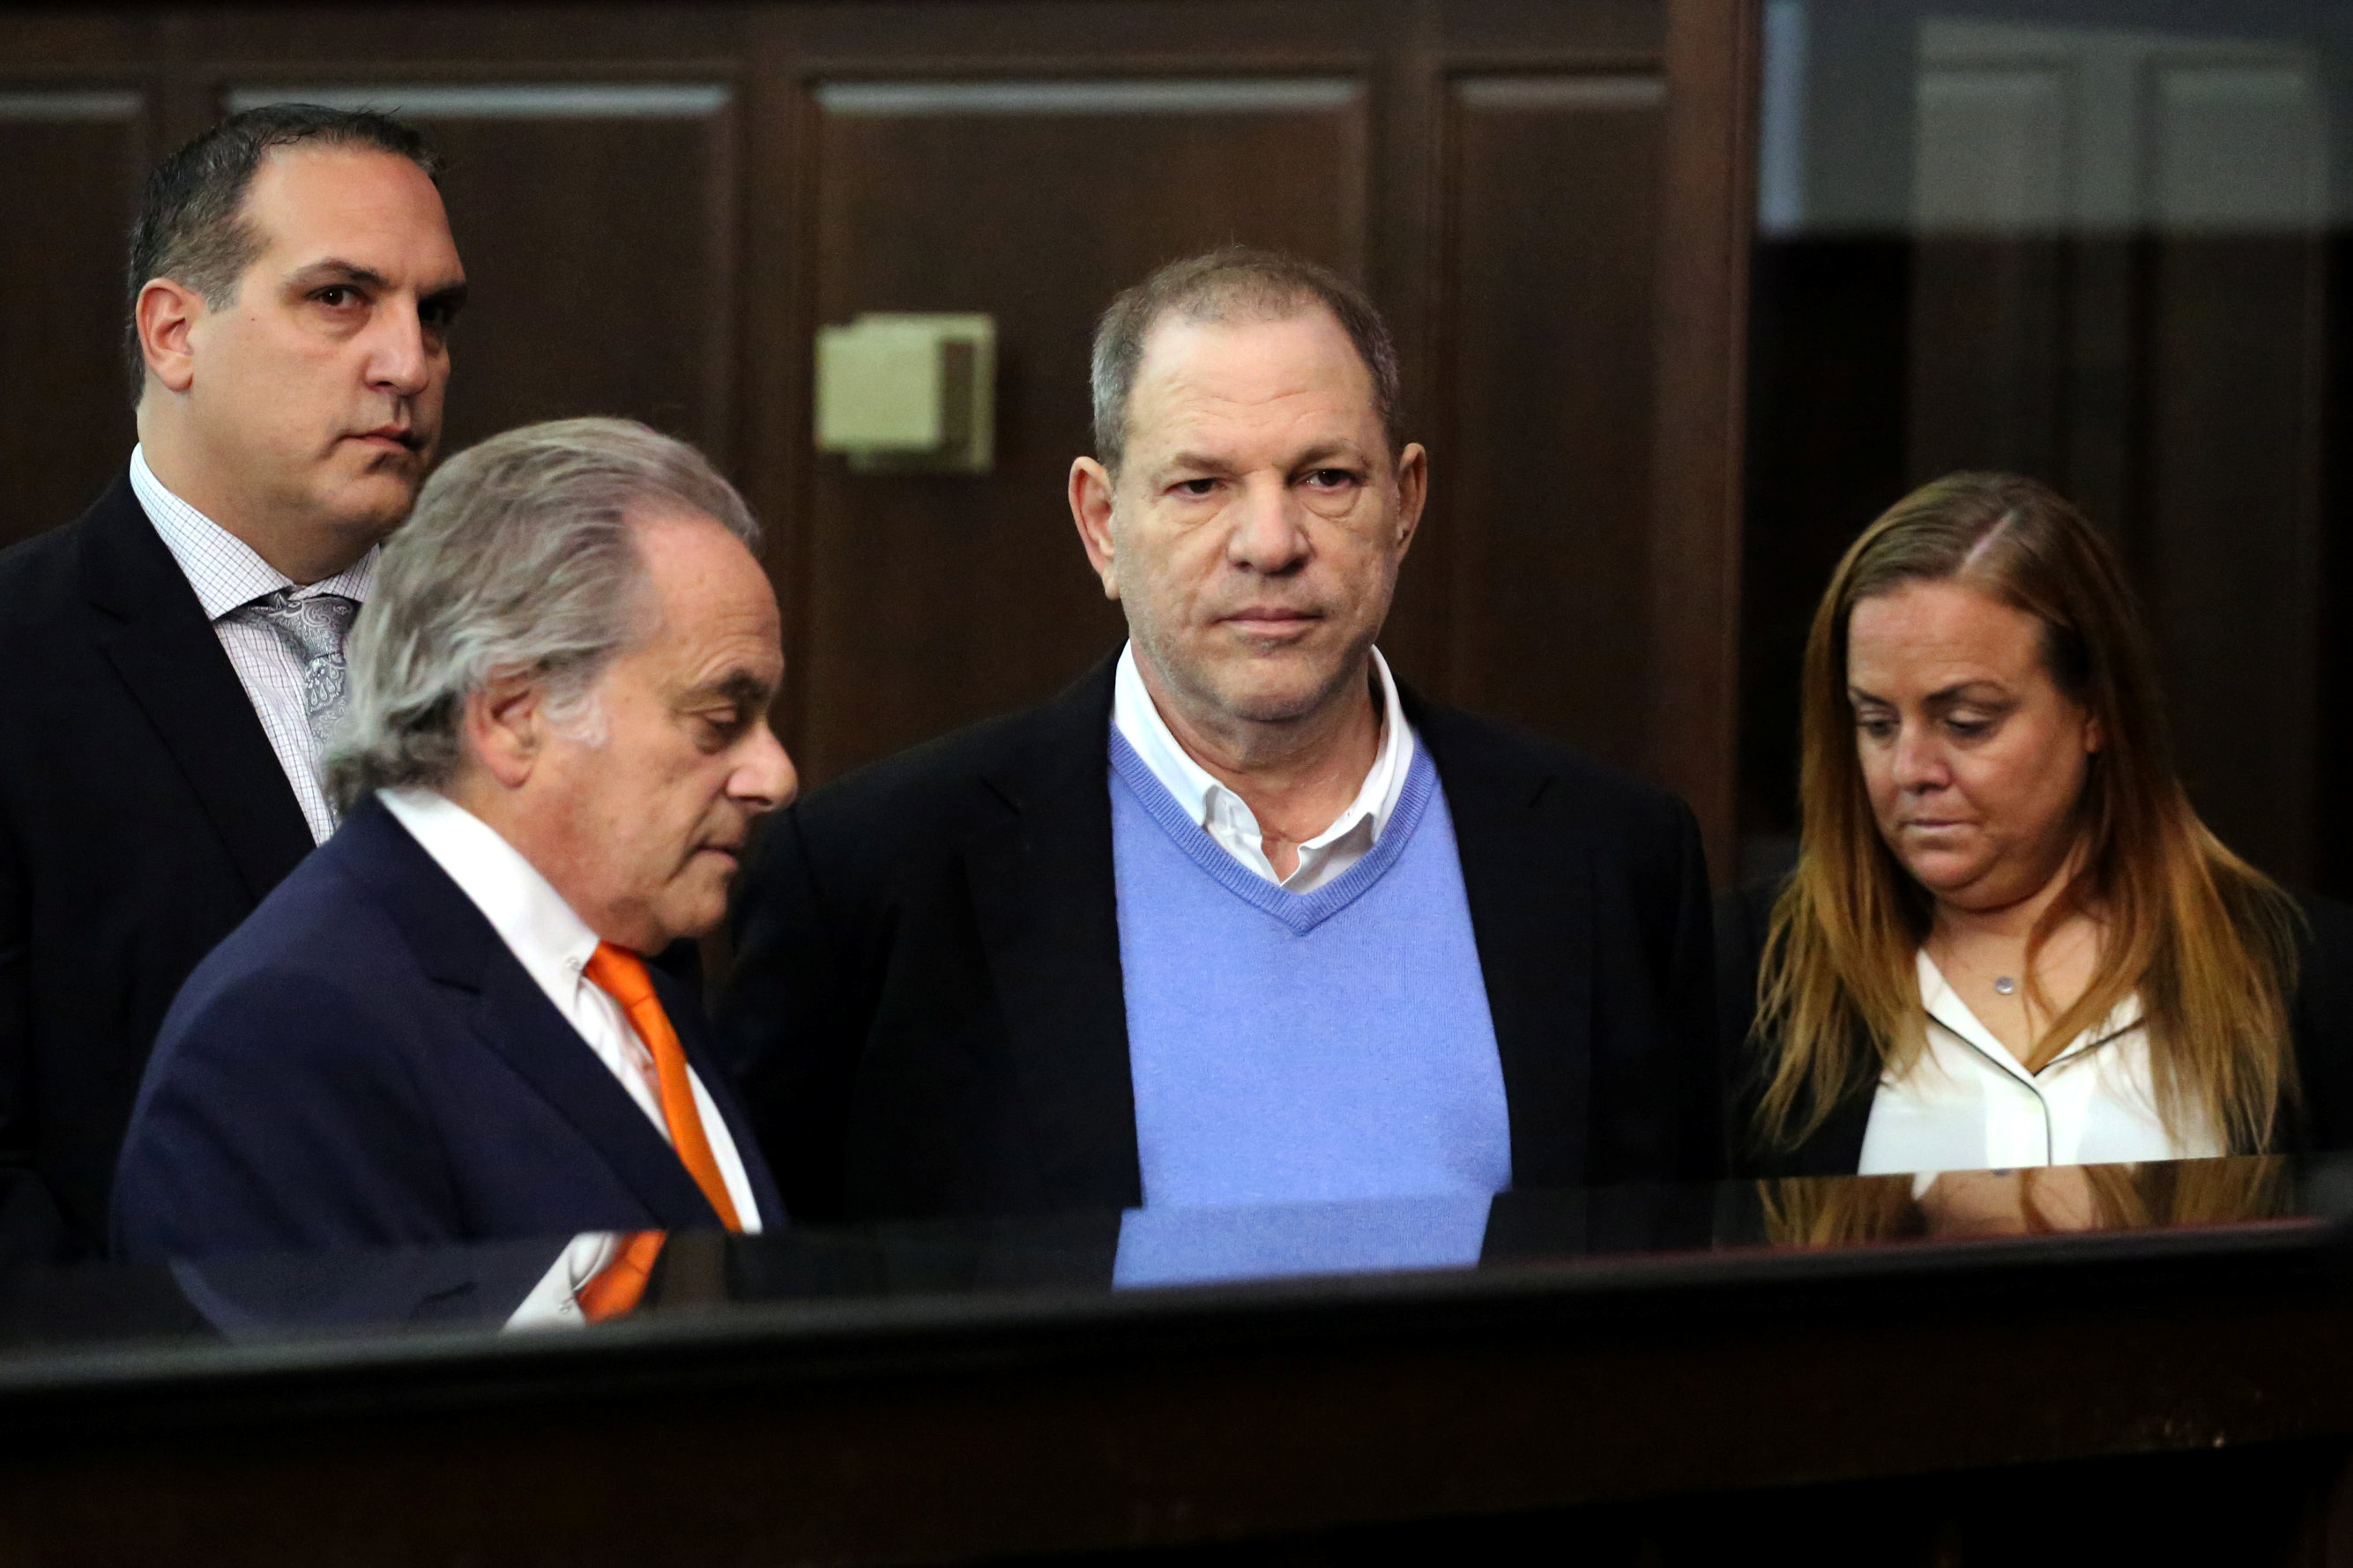 Harvey Weinstein se declarará no culpable, según su abogado